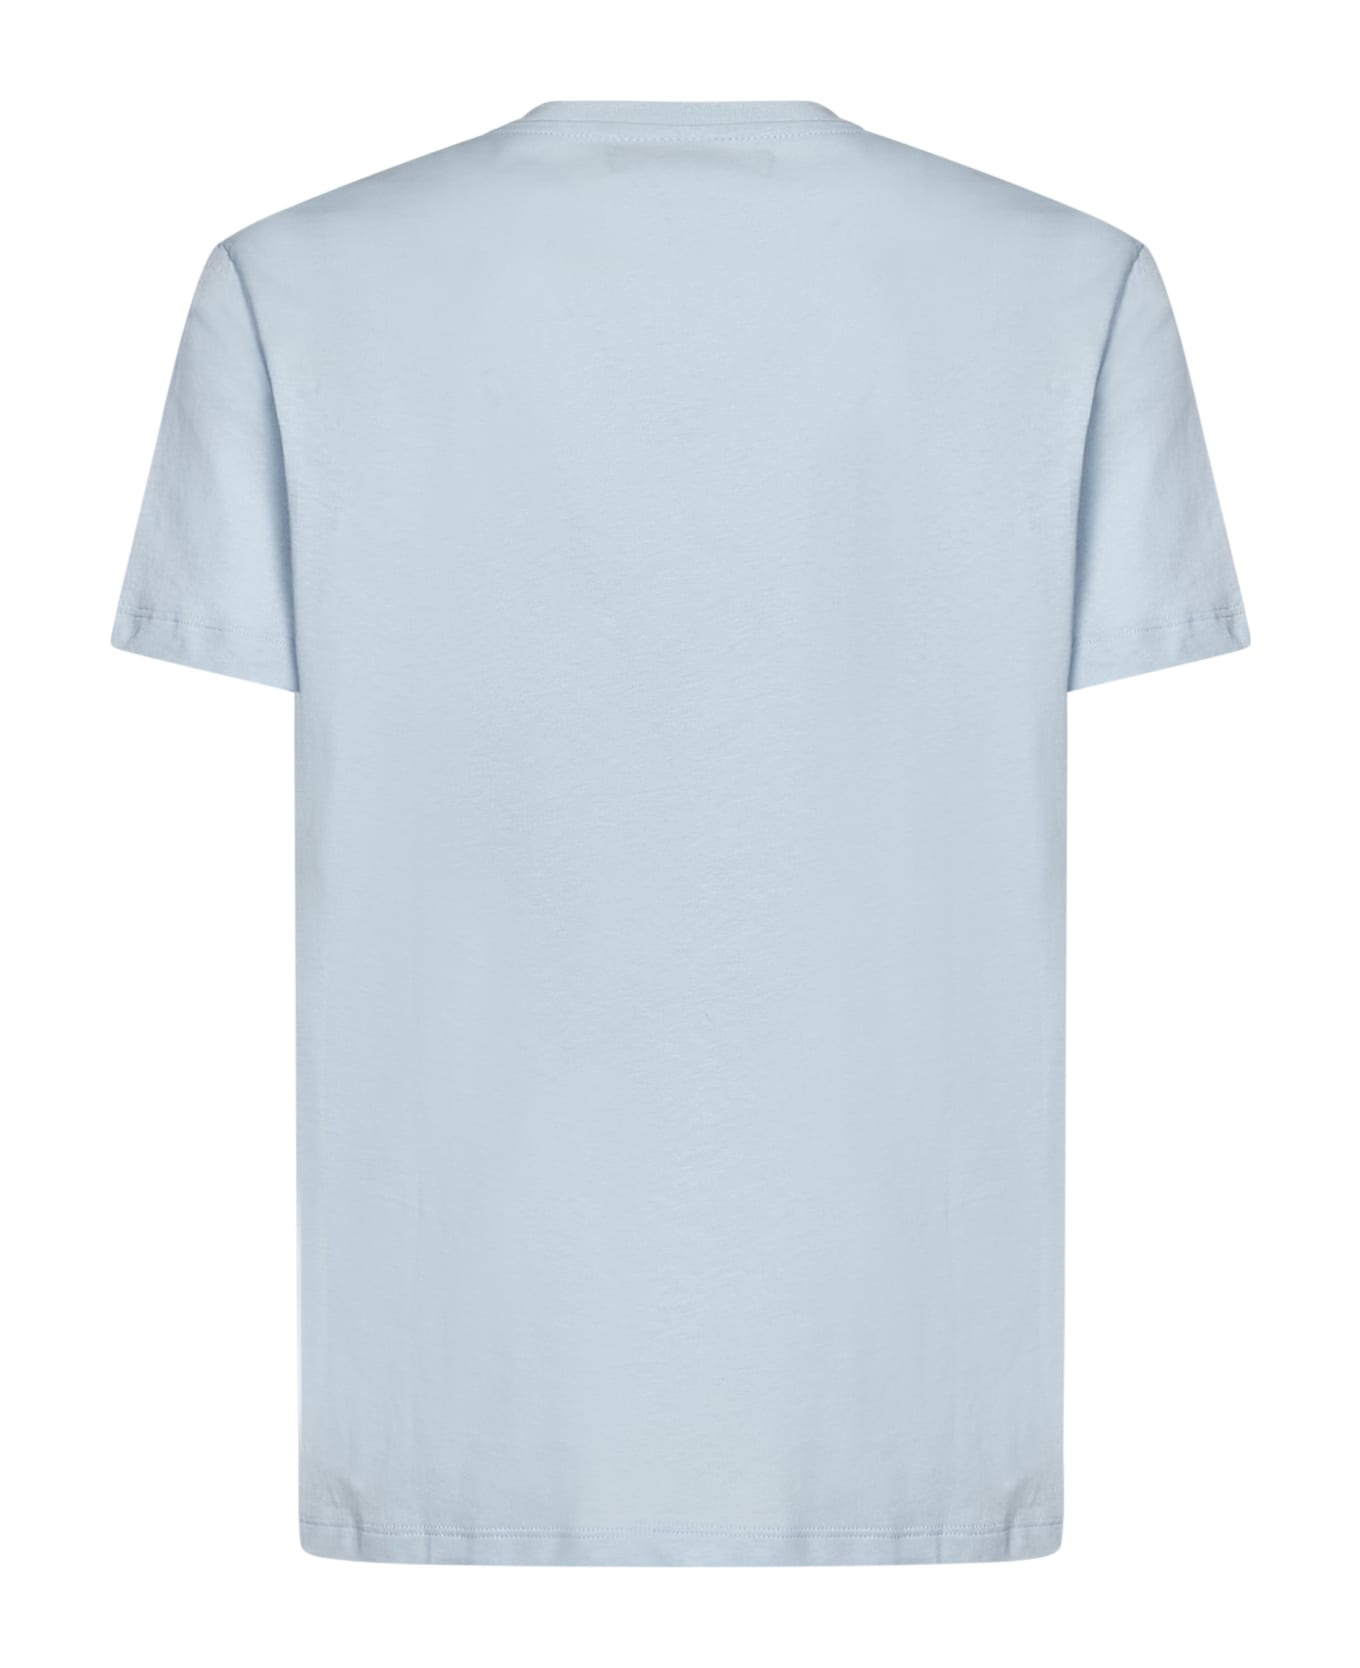 Vilebrequin White Sailing Boat T-shirt - Azzurro Chiaro シャツ